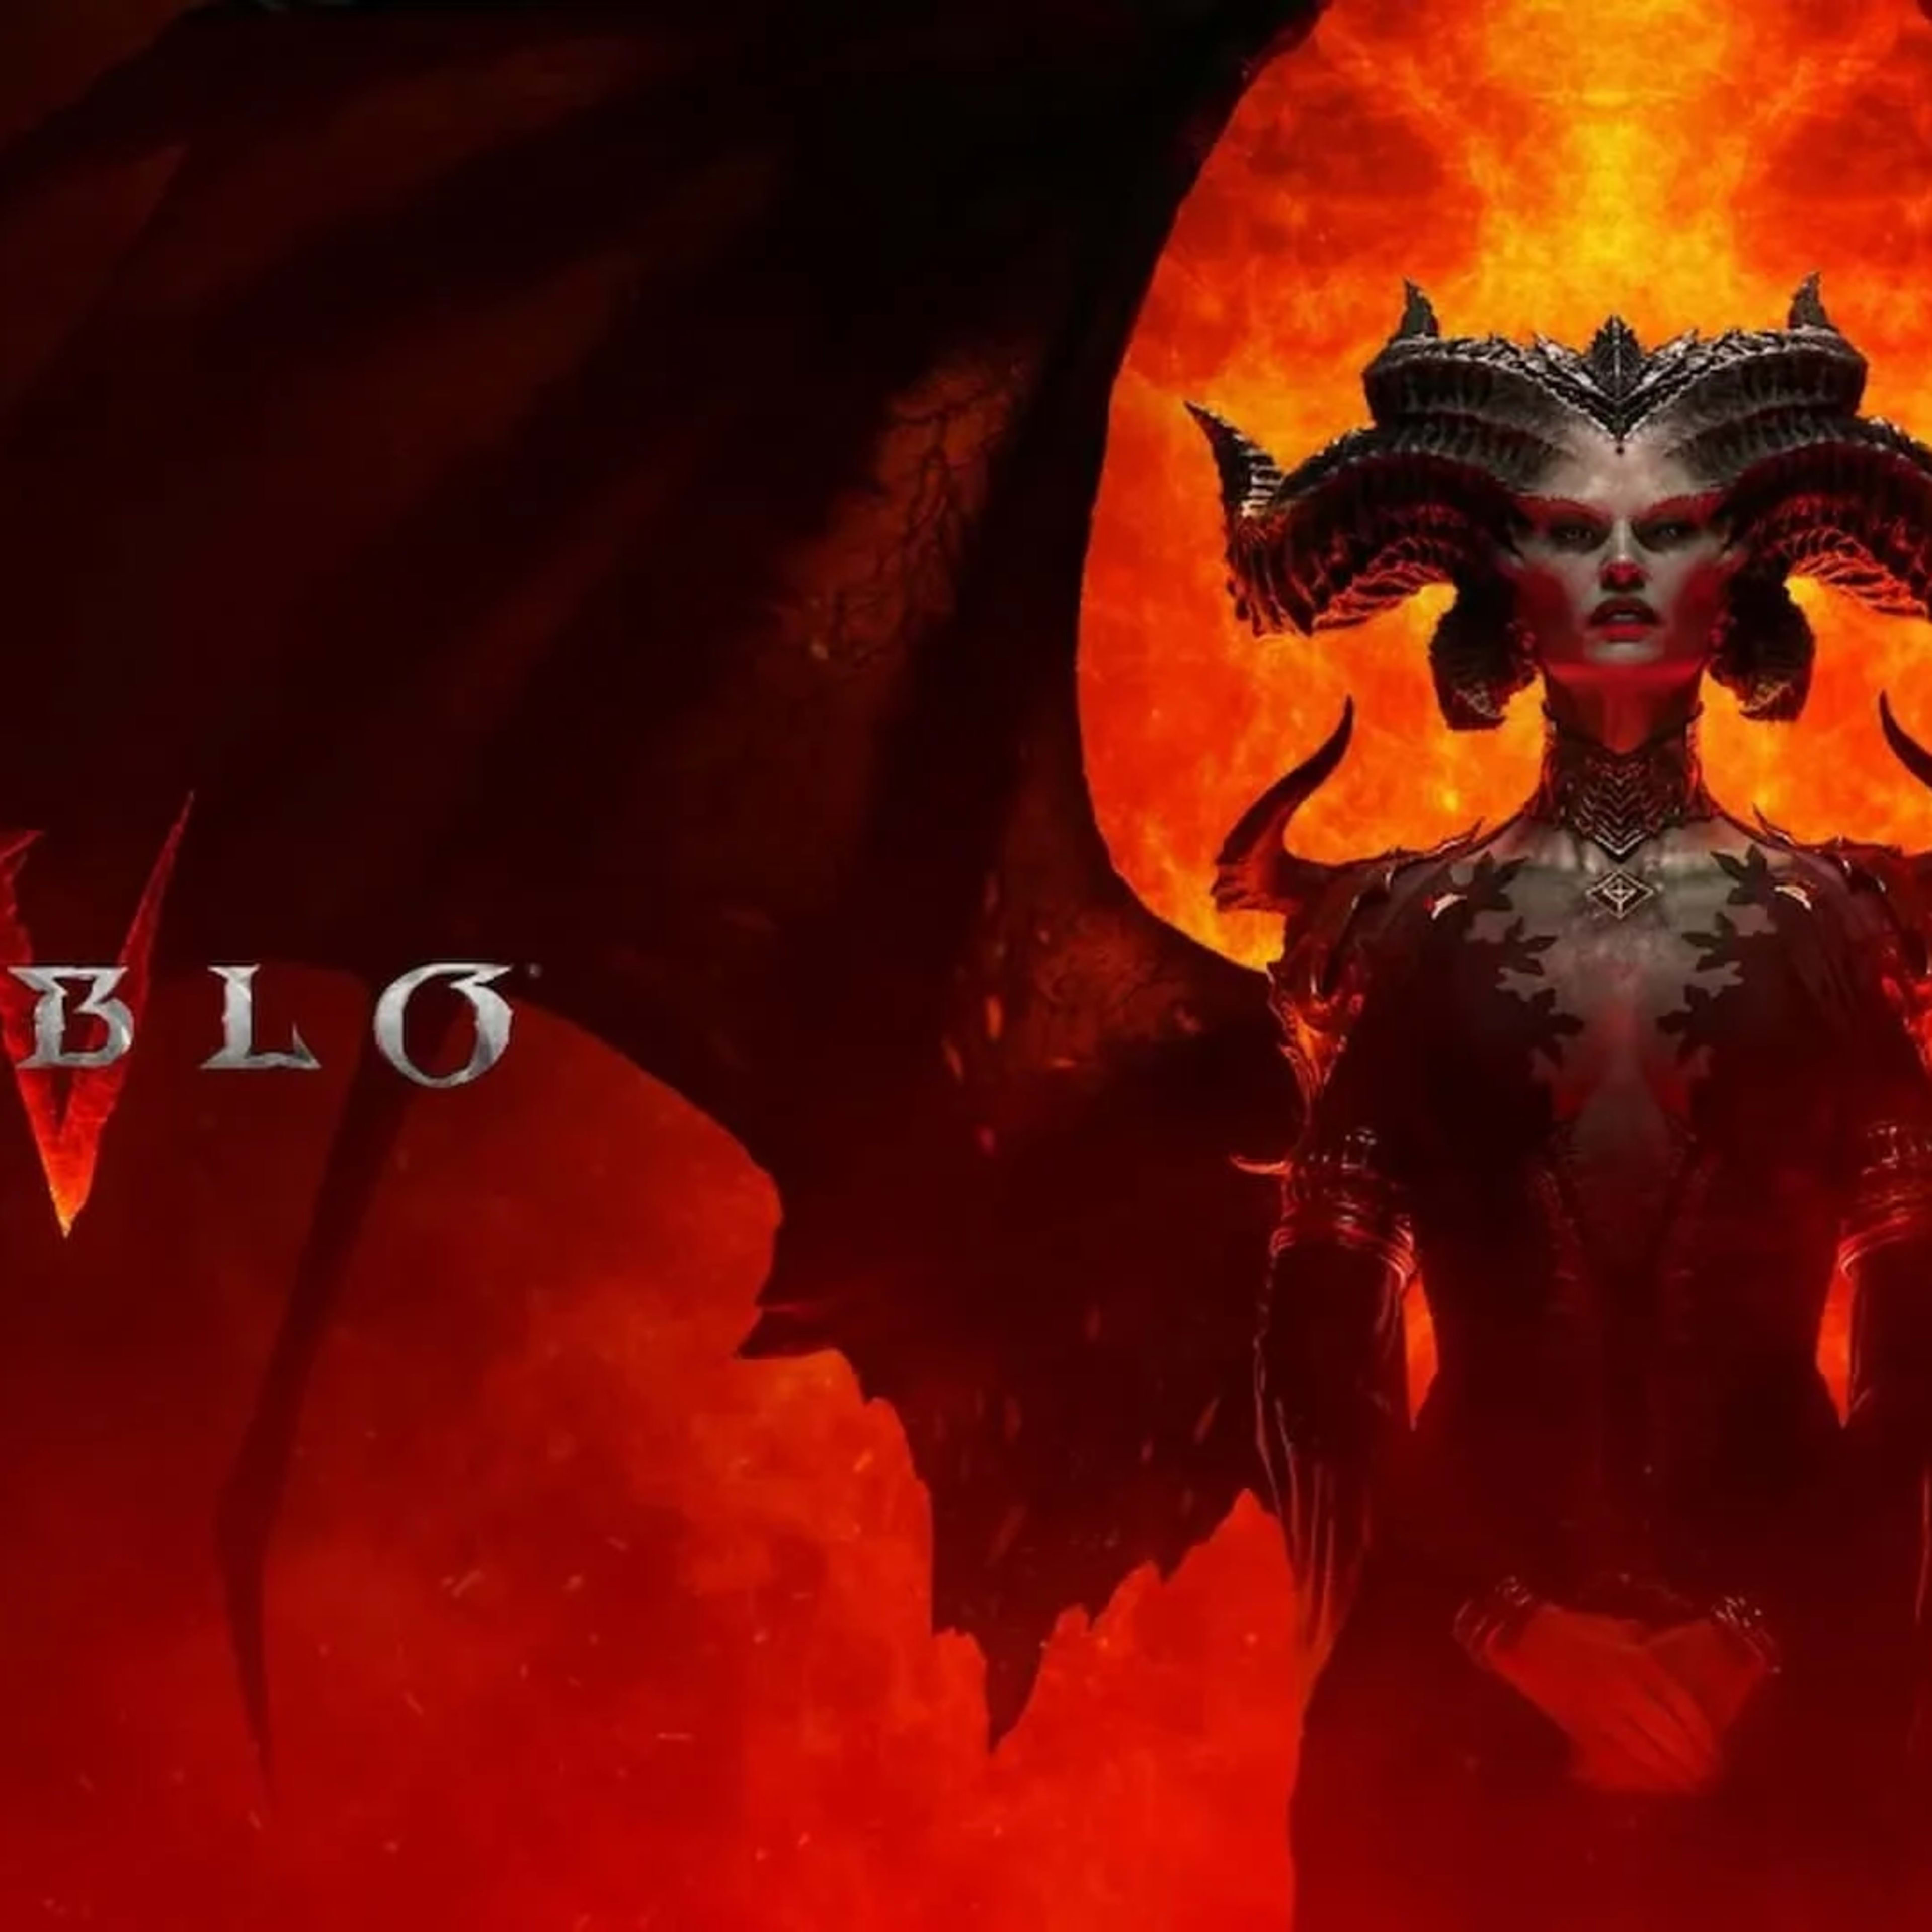 Diablo IV w/ Digital Code Activation